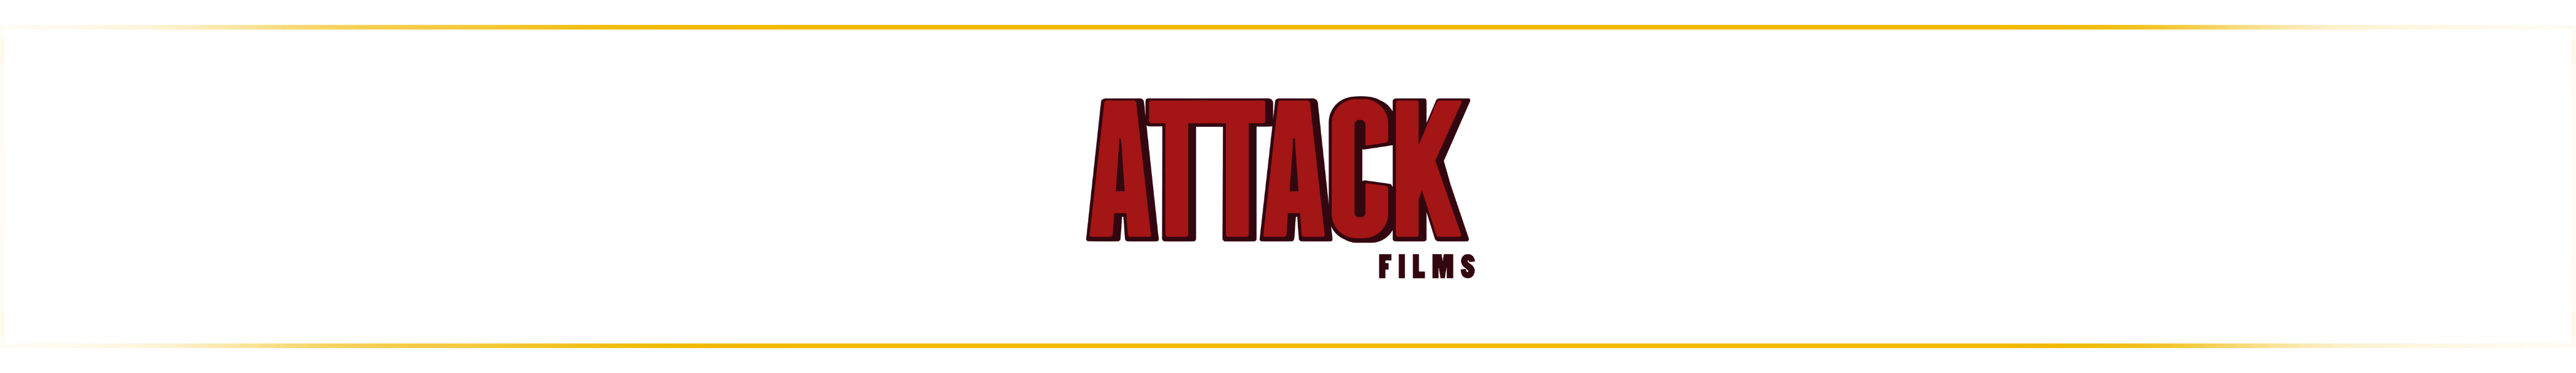 Attack films vermelho2